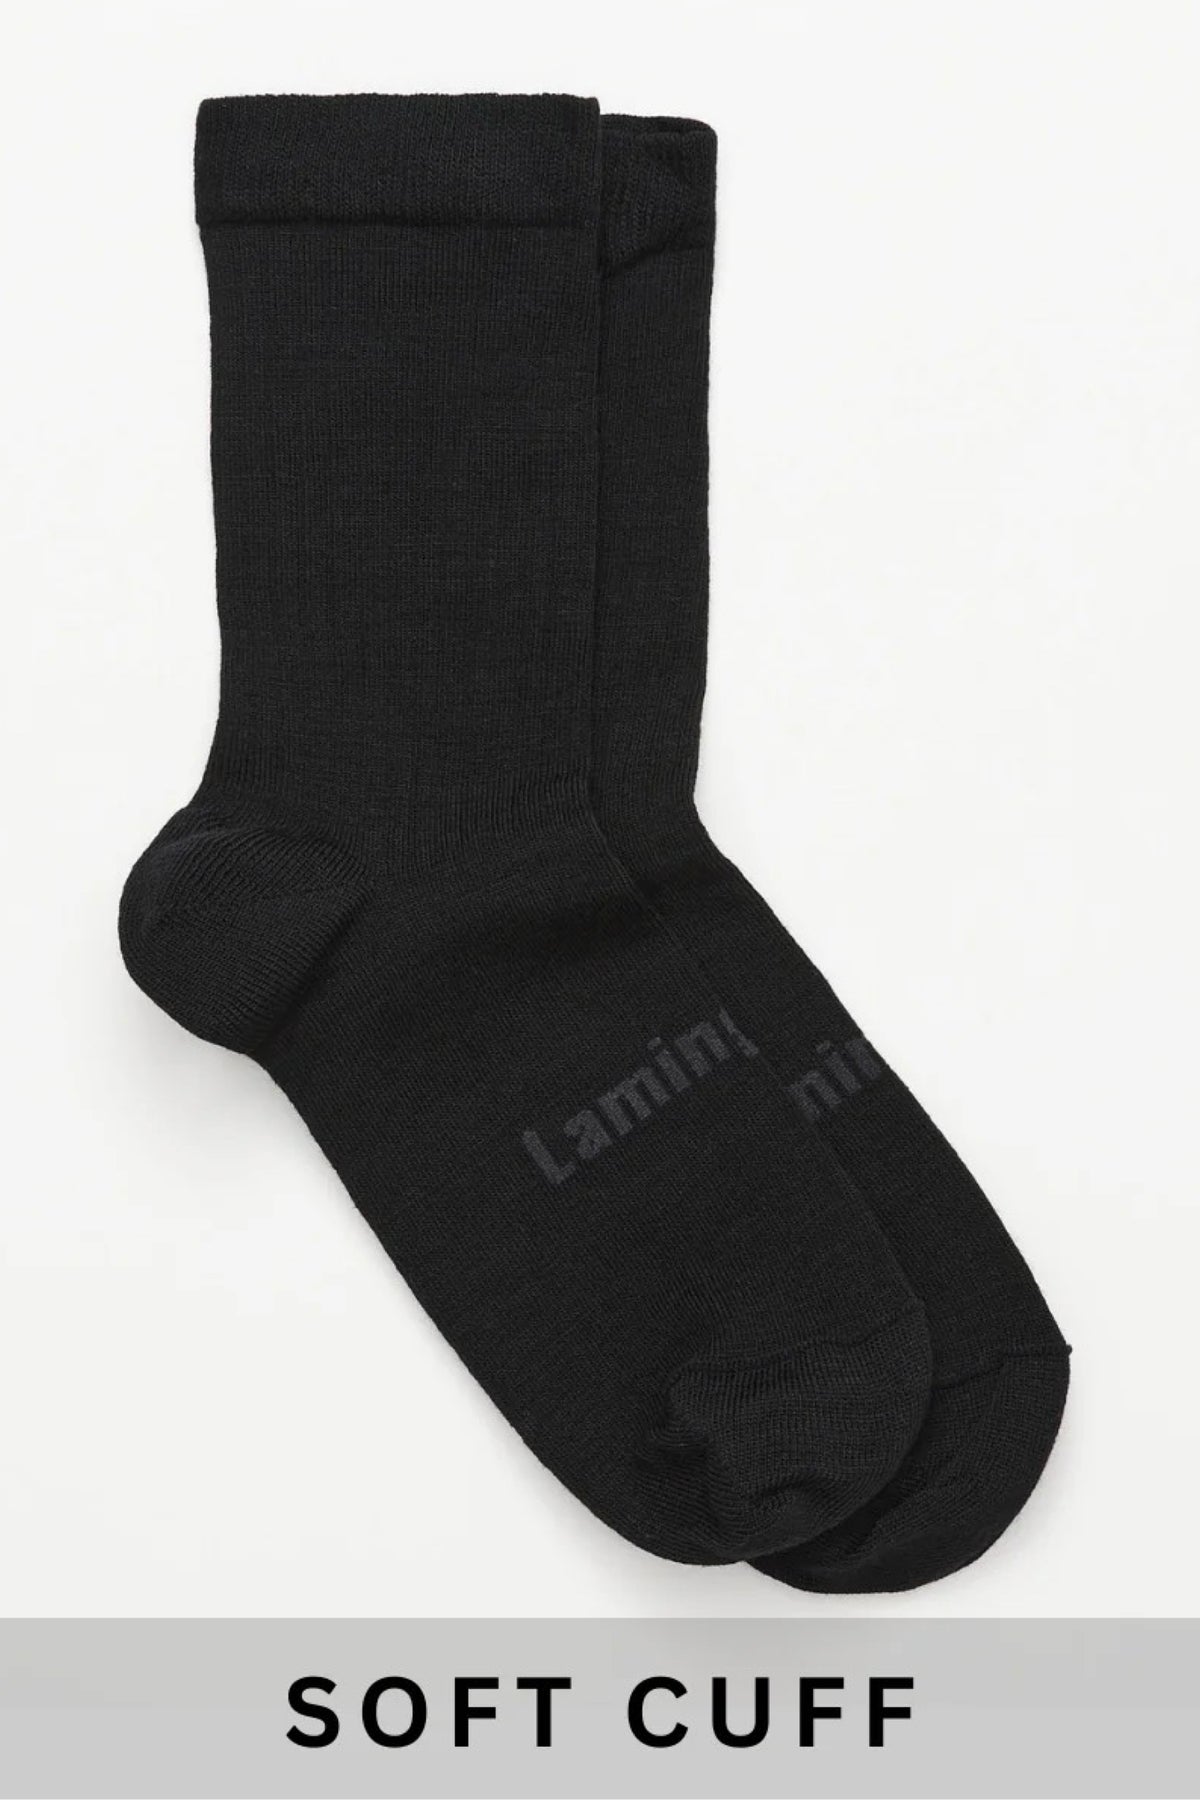 Merino Wool Soft Cuff Crew Socks Black Rib